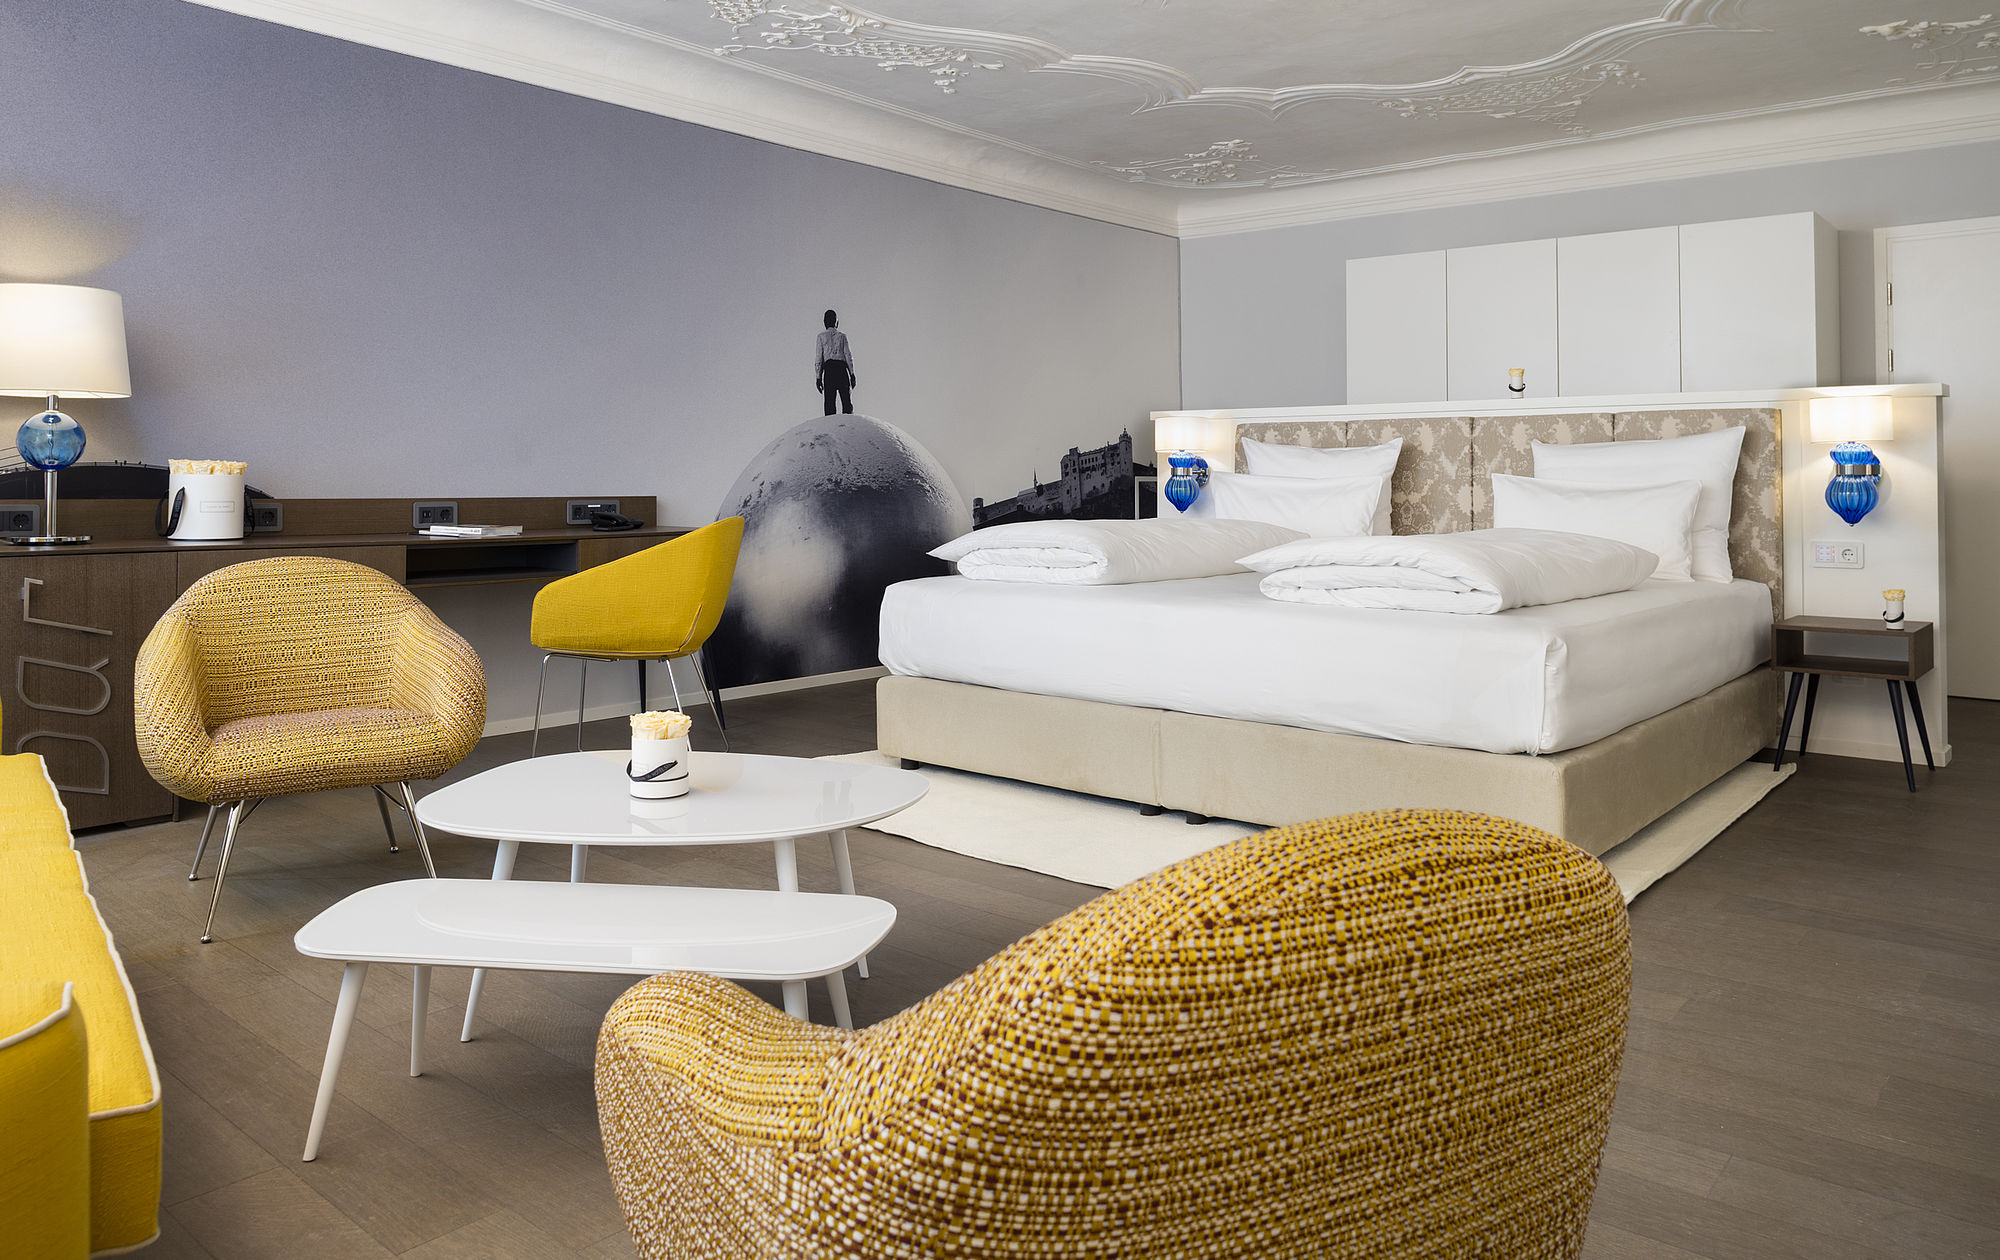 Geräumige Hotel-Suite mit großem Boxspringbett, Sitzecke mit gemütlichen Lounge-Sesseln und Sofa, sowie modernem Design der Wandtapete